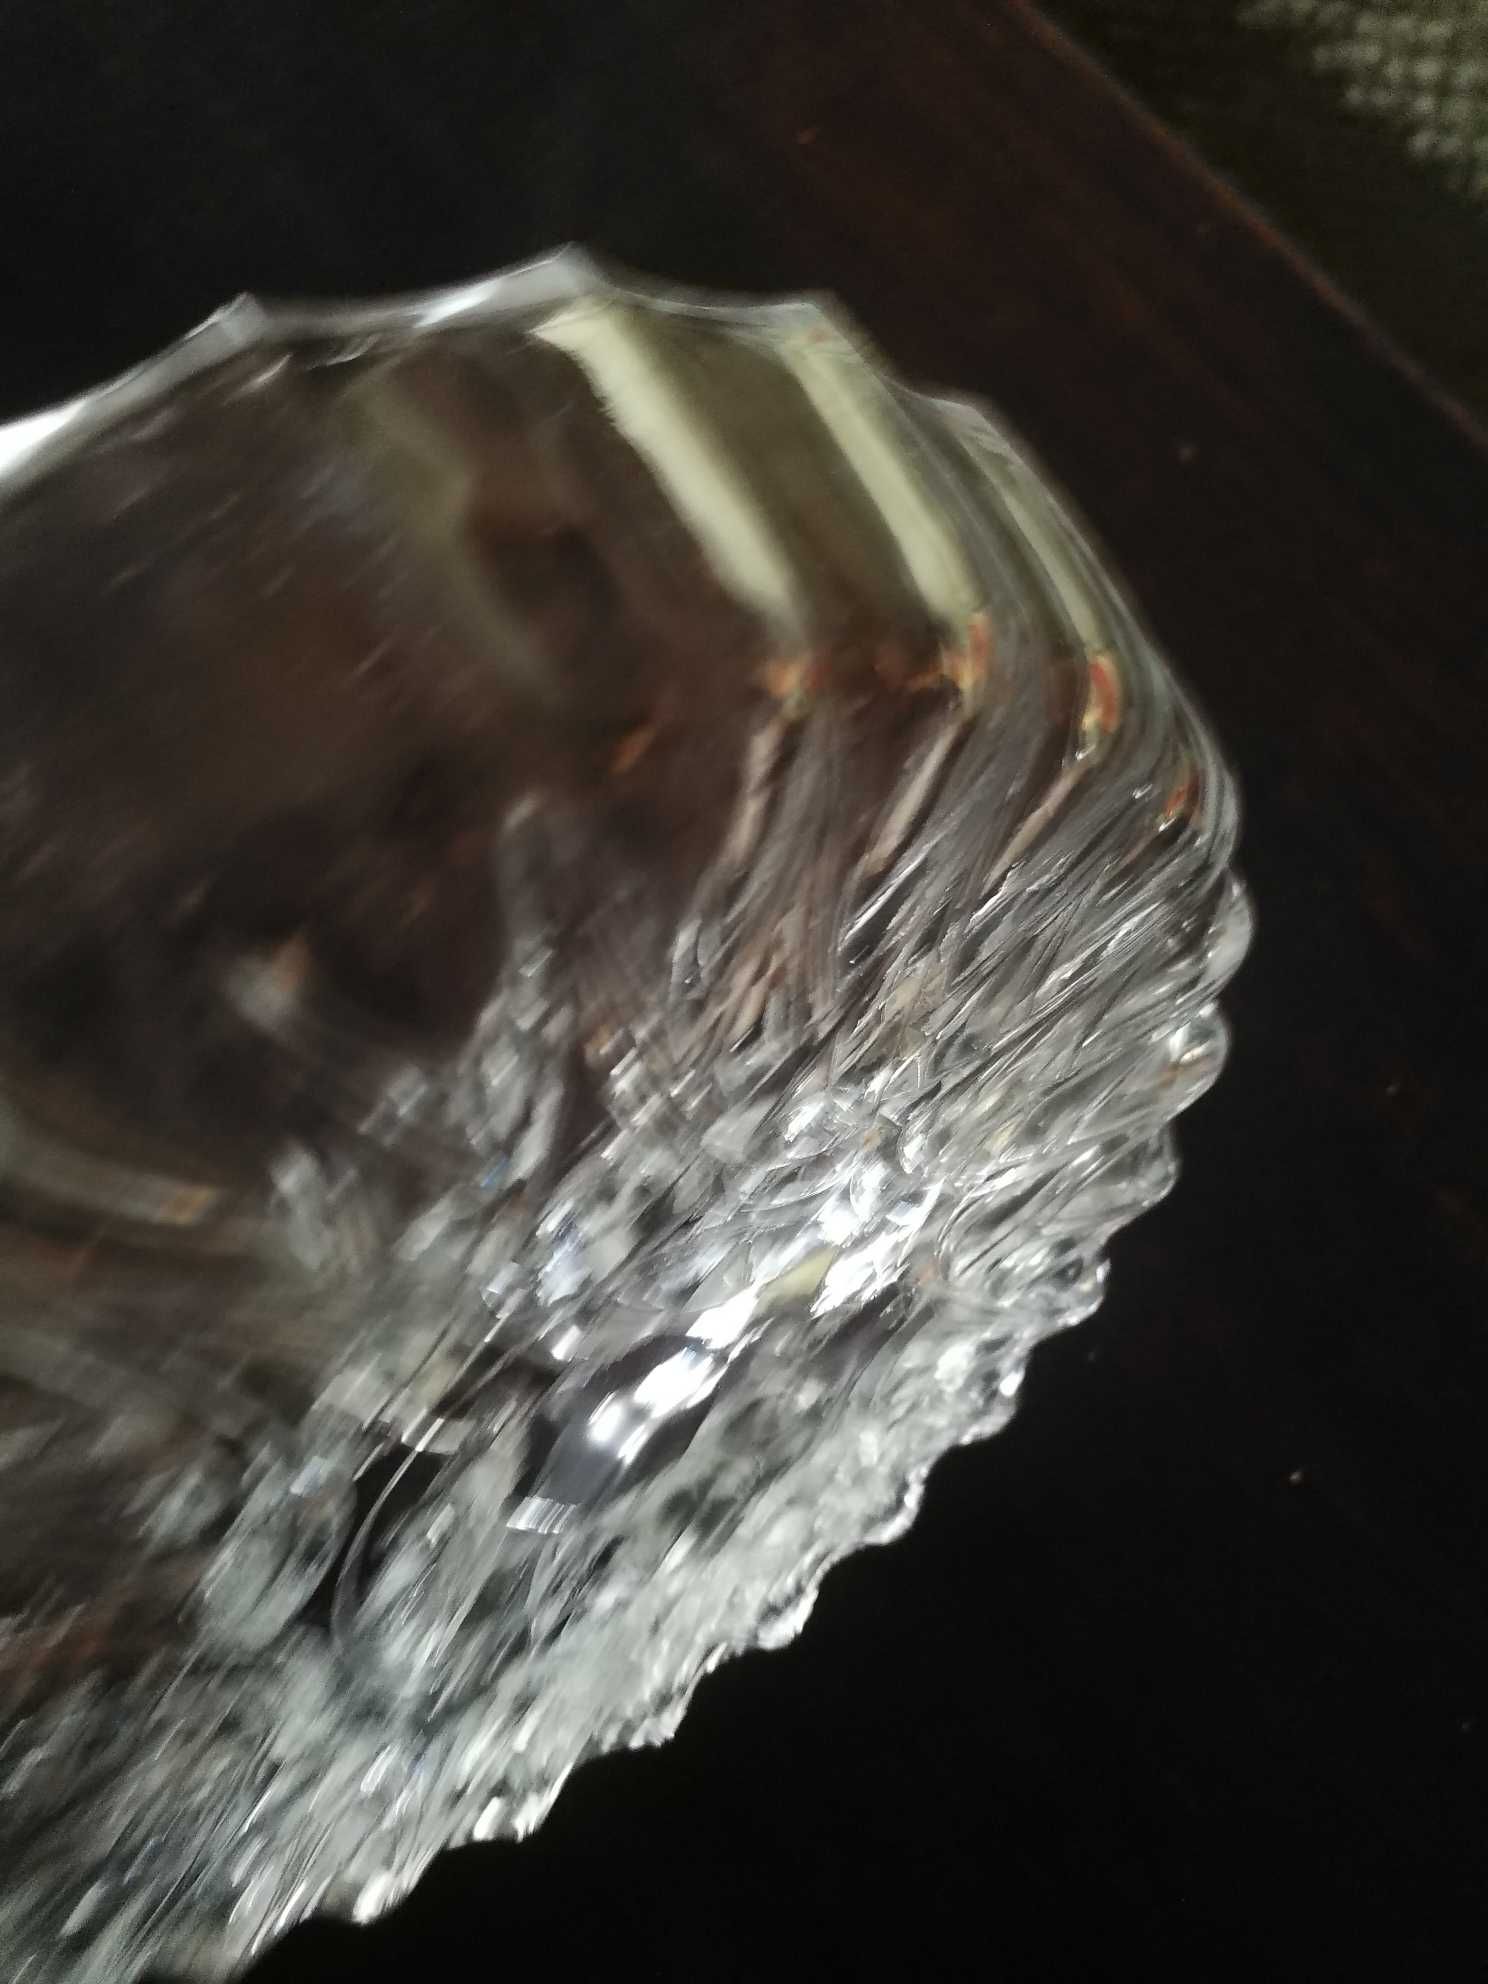 Okrągły dzielony kryształowy talerz – patera na przystawki